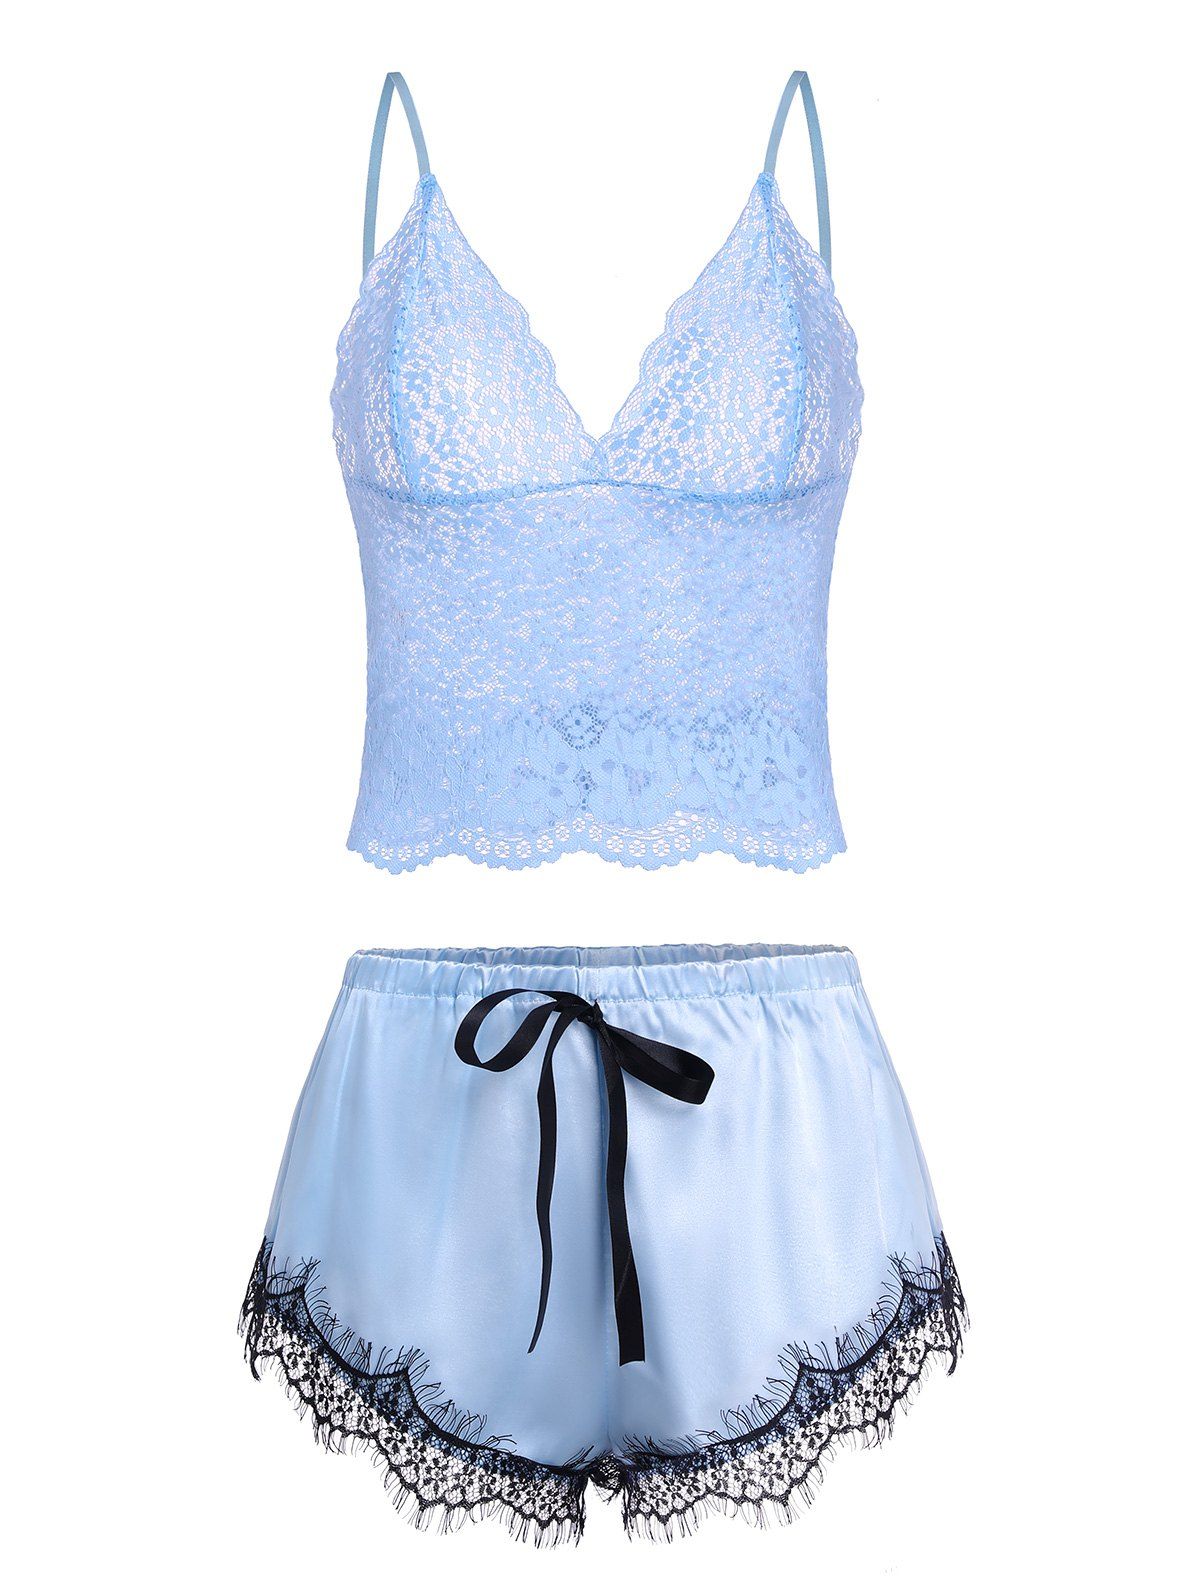 Lace Insert Bowknot Satin Pajama Shorts Set - LIGHT BLUE L